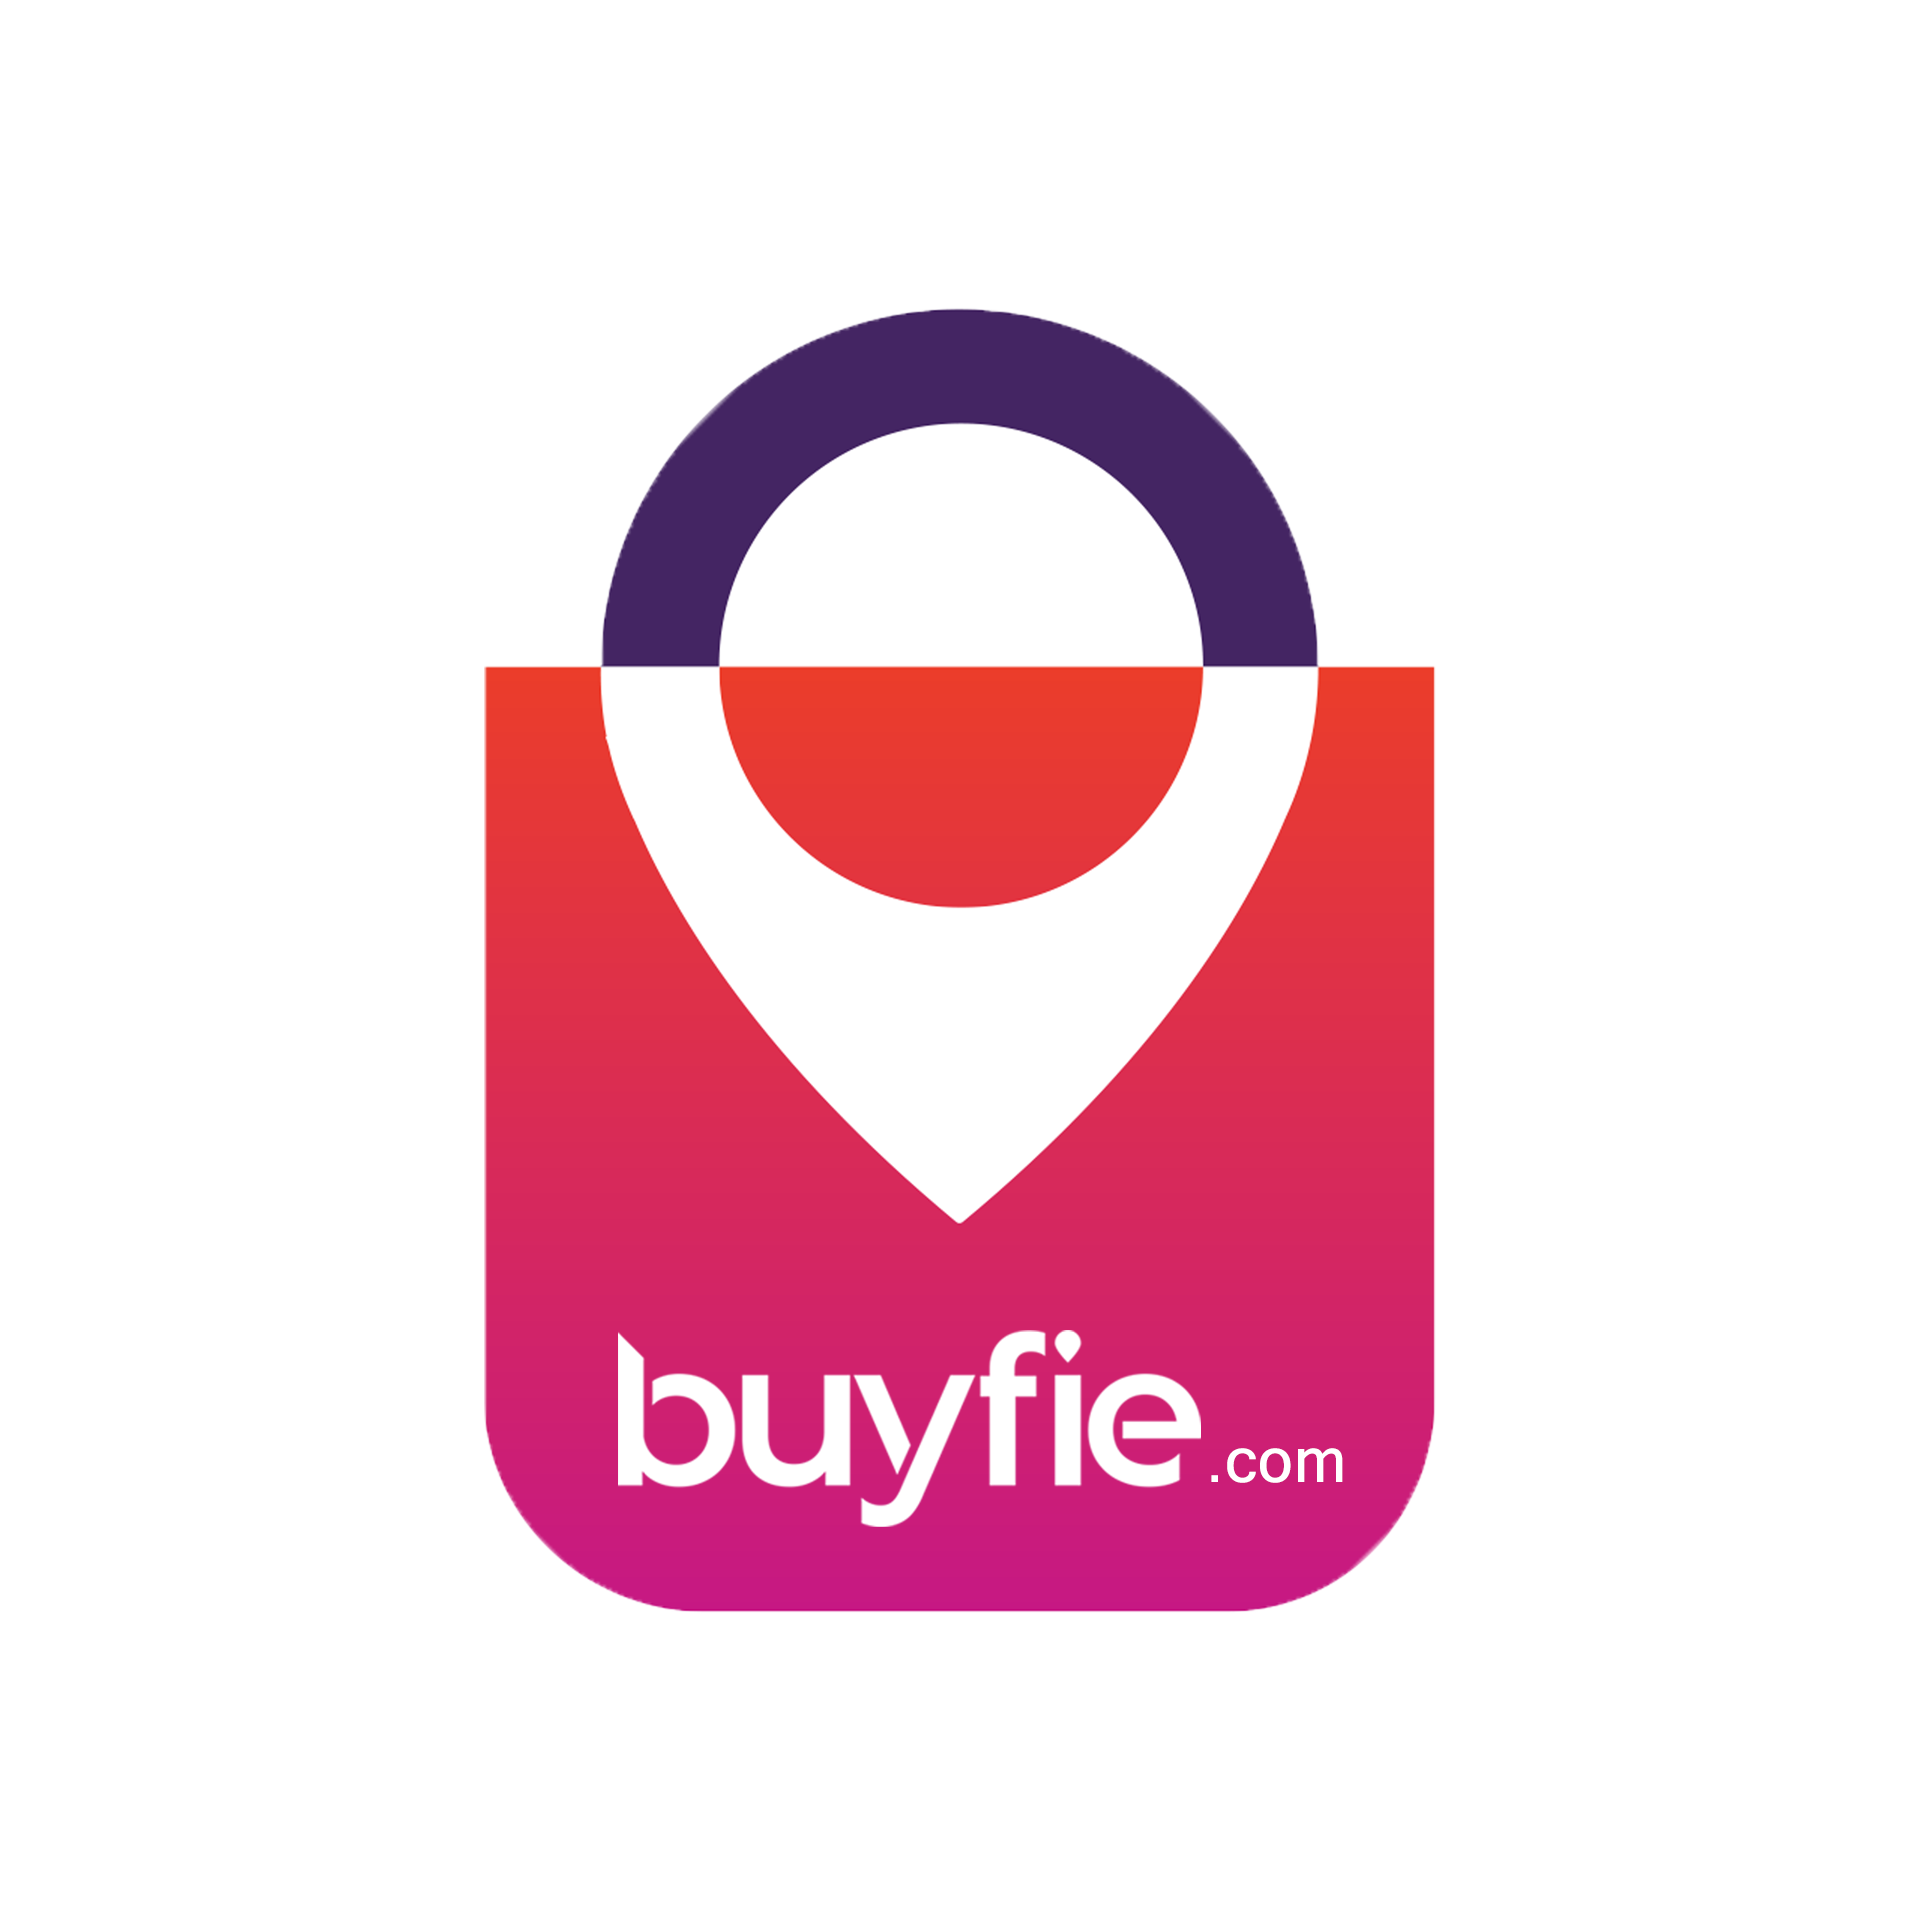 buyfie logo